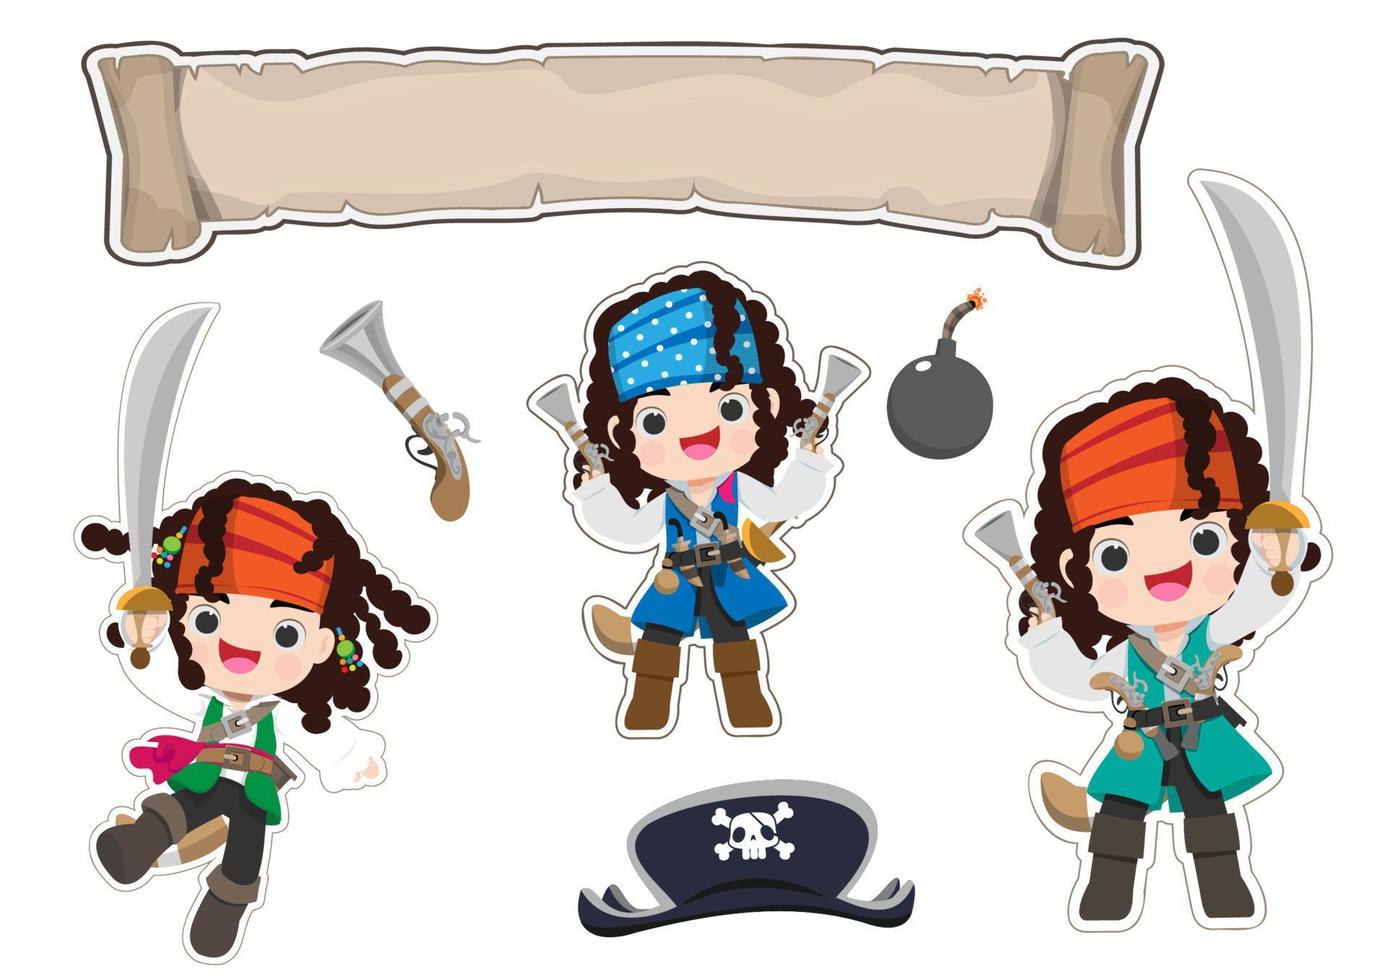 conjunto de objetos de jogo de vetor de desenho animado pirata. coleção de elementos de aventura no mar